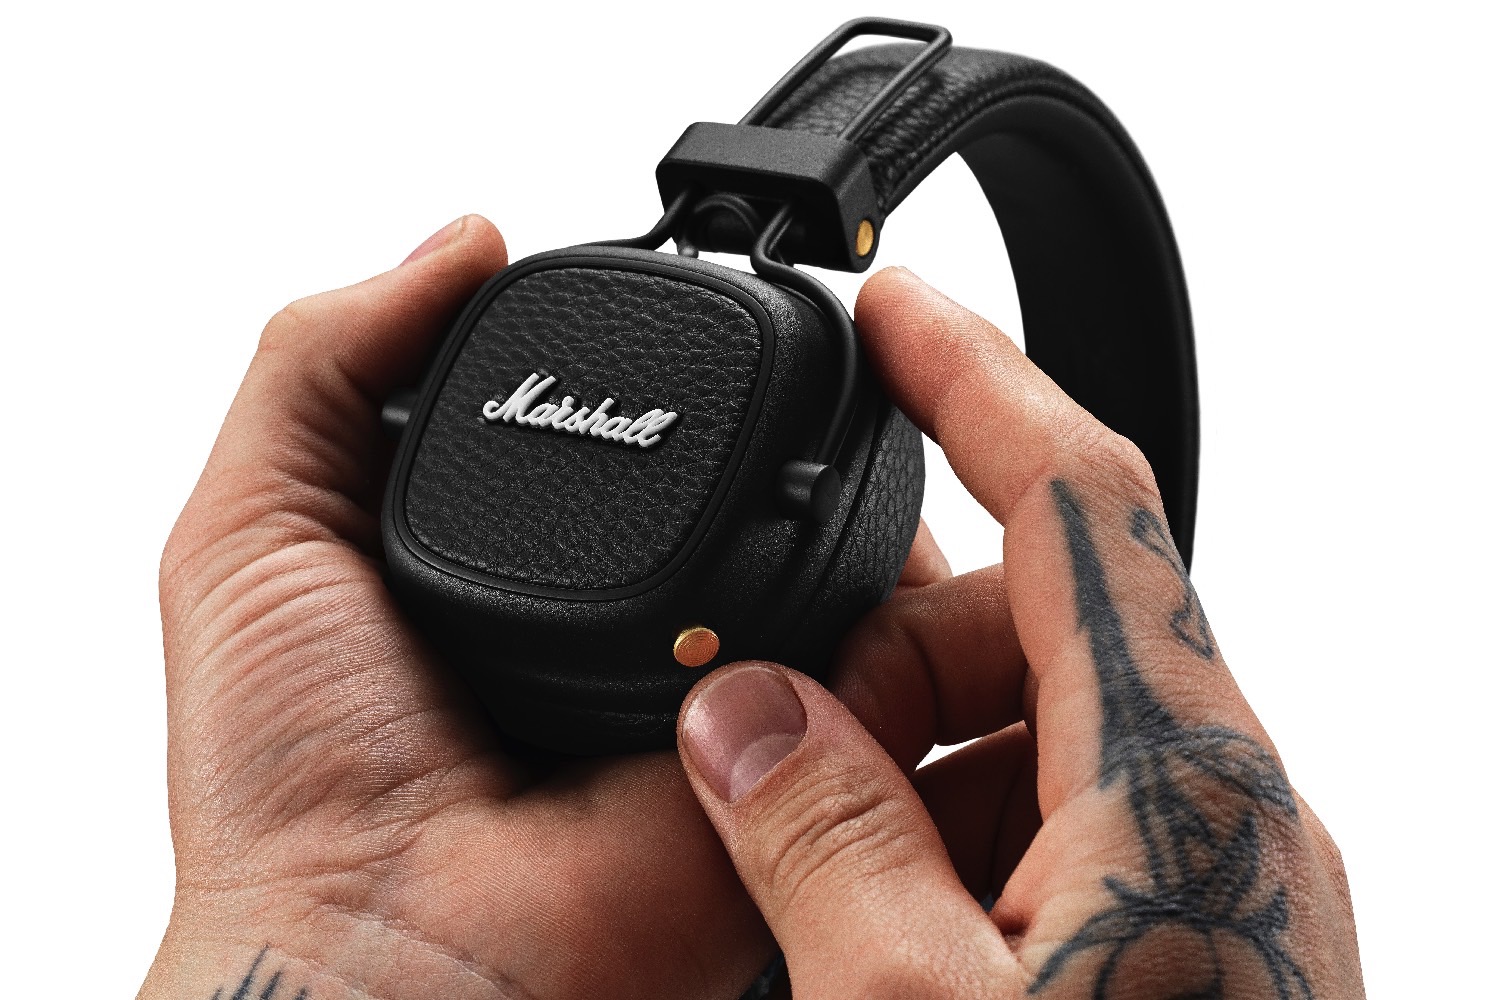 Marshall Major III Bluetooth Wireless On-Ear Headphones Brown MAJOR II  BLUETOOTH HEADPHONES - Best Buy